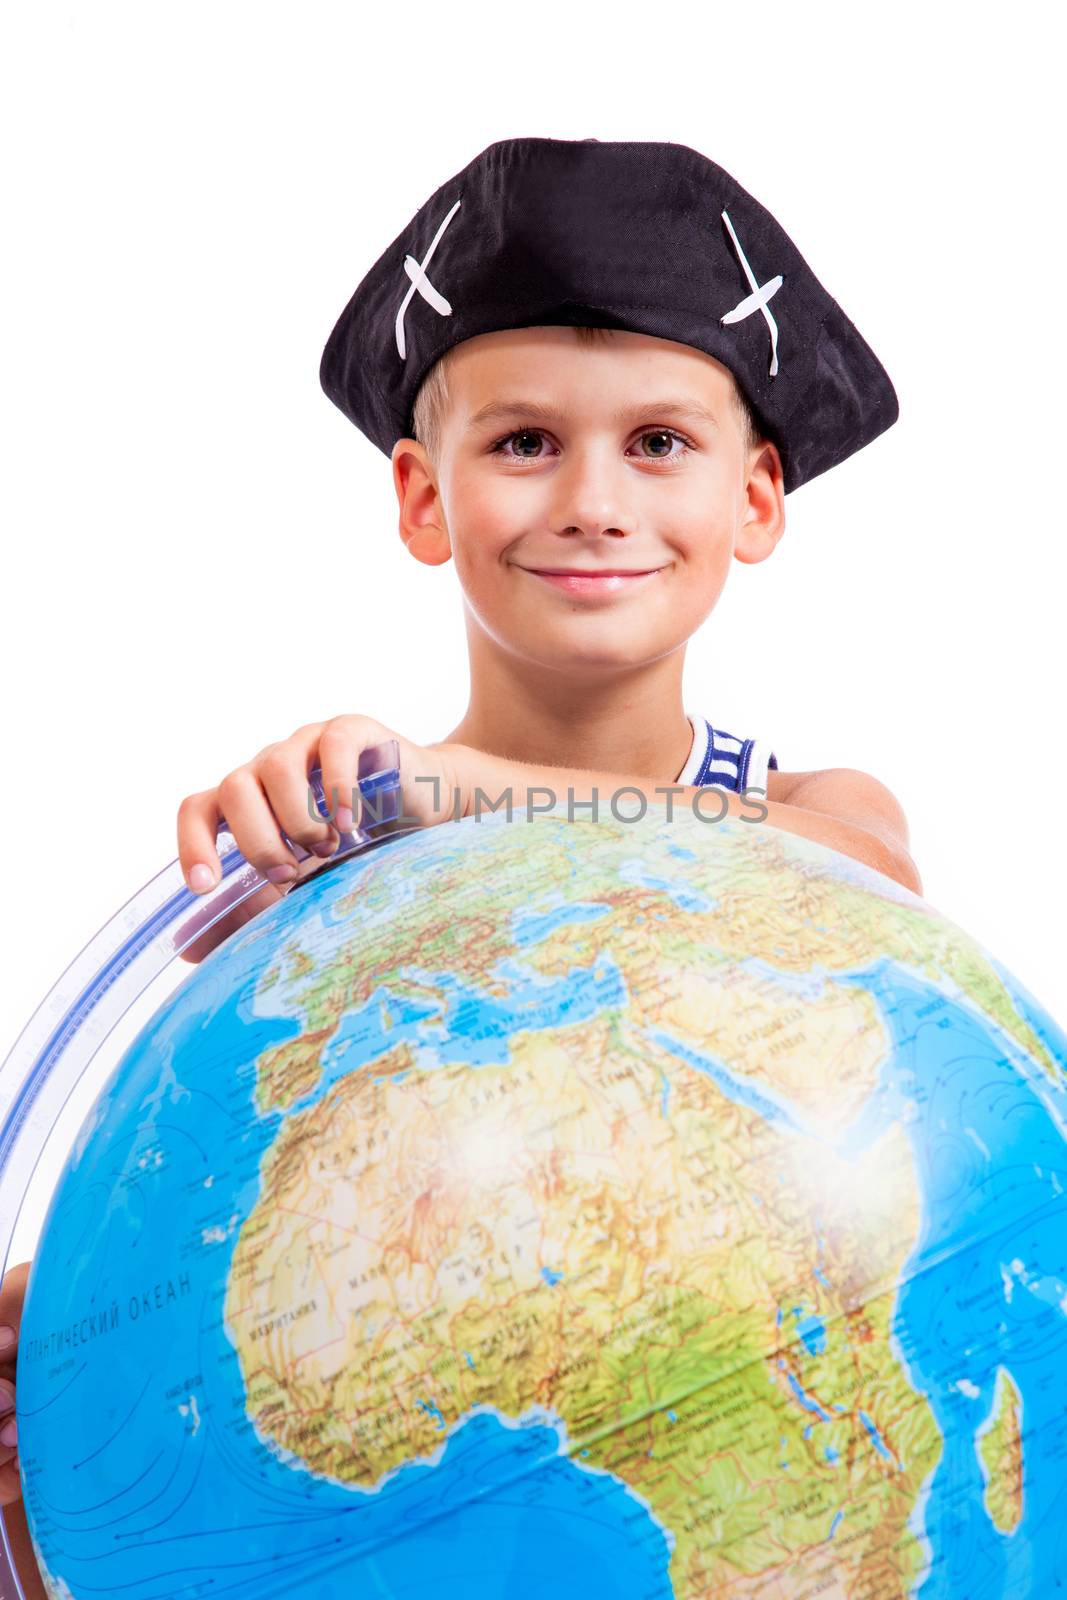 Boy holding a globe isolated on white background